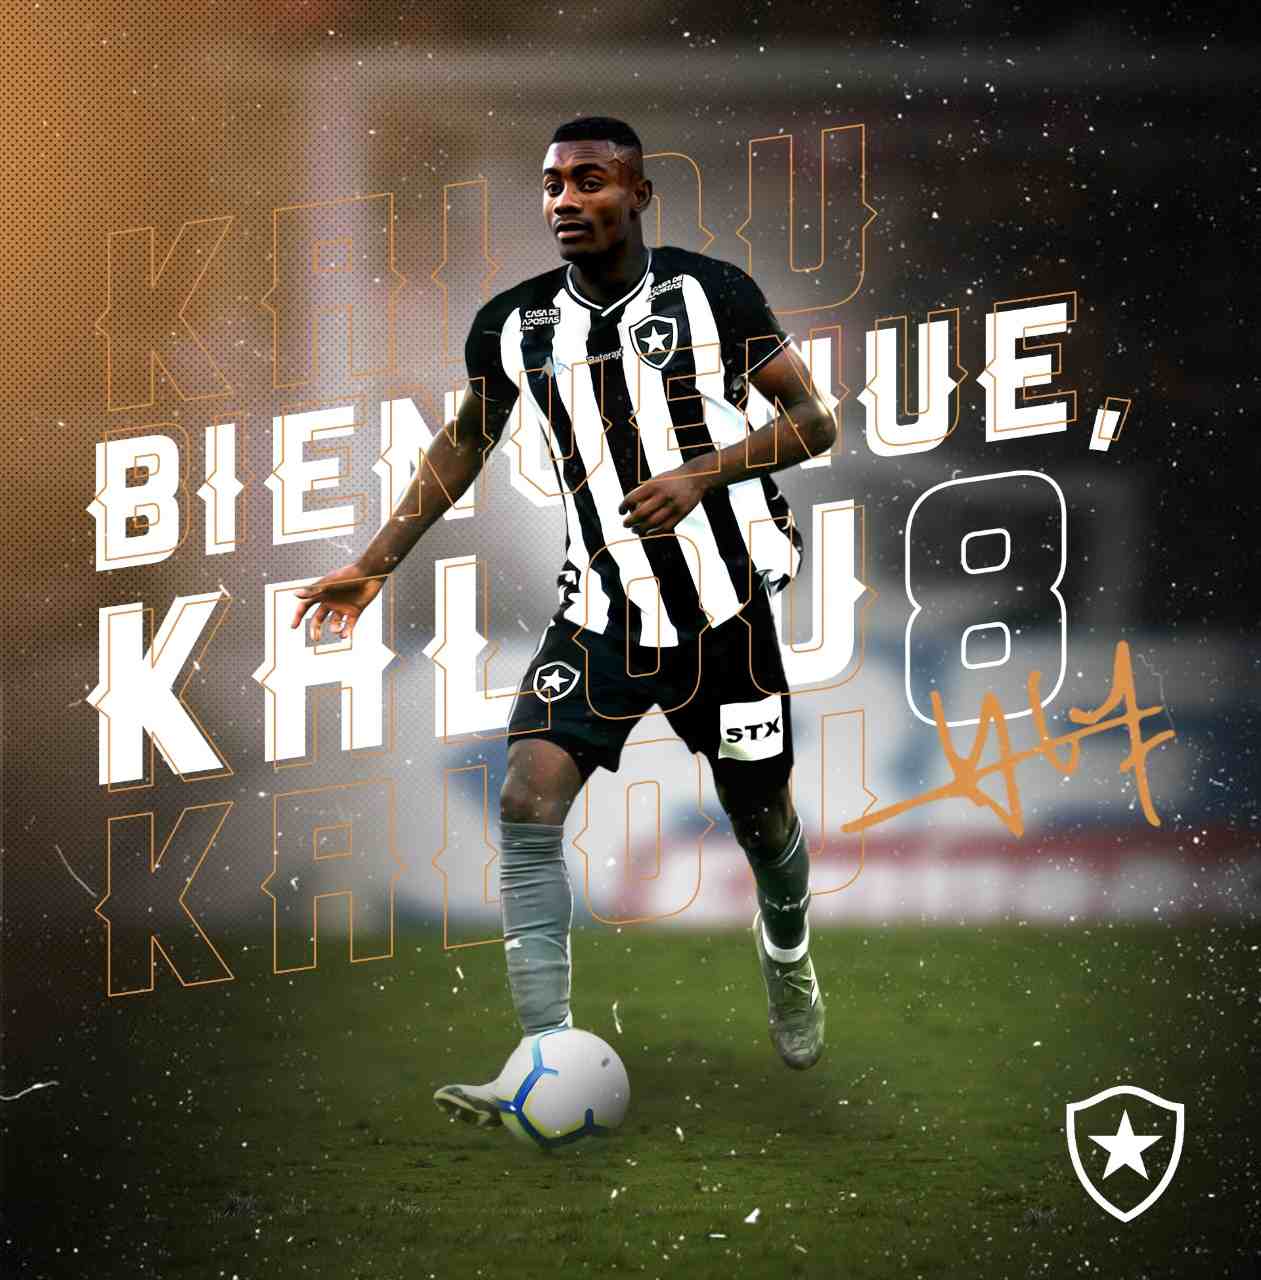 FECHADO: O segundo reforço de renome internacional do Botafogo para a temporada está liberado para entrar em campo. O nome de Salomon Kalou apareceu no BID (Boletim Informativo Diário) da CBF nesta quinta-feira e ele, consequentemente, pode estrear pelo Alvinegro.